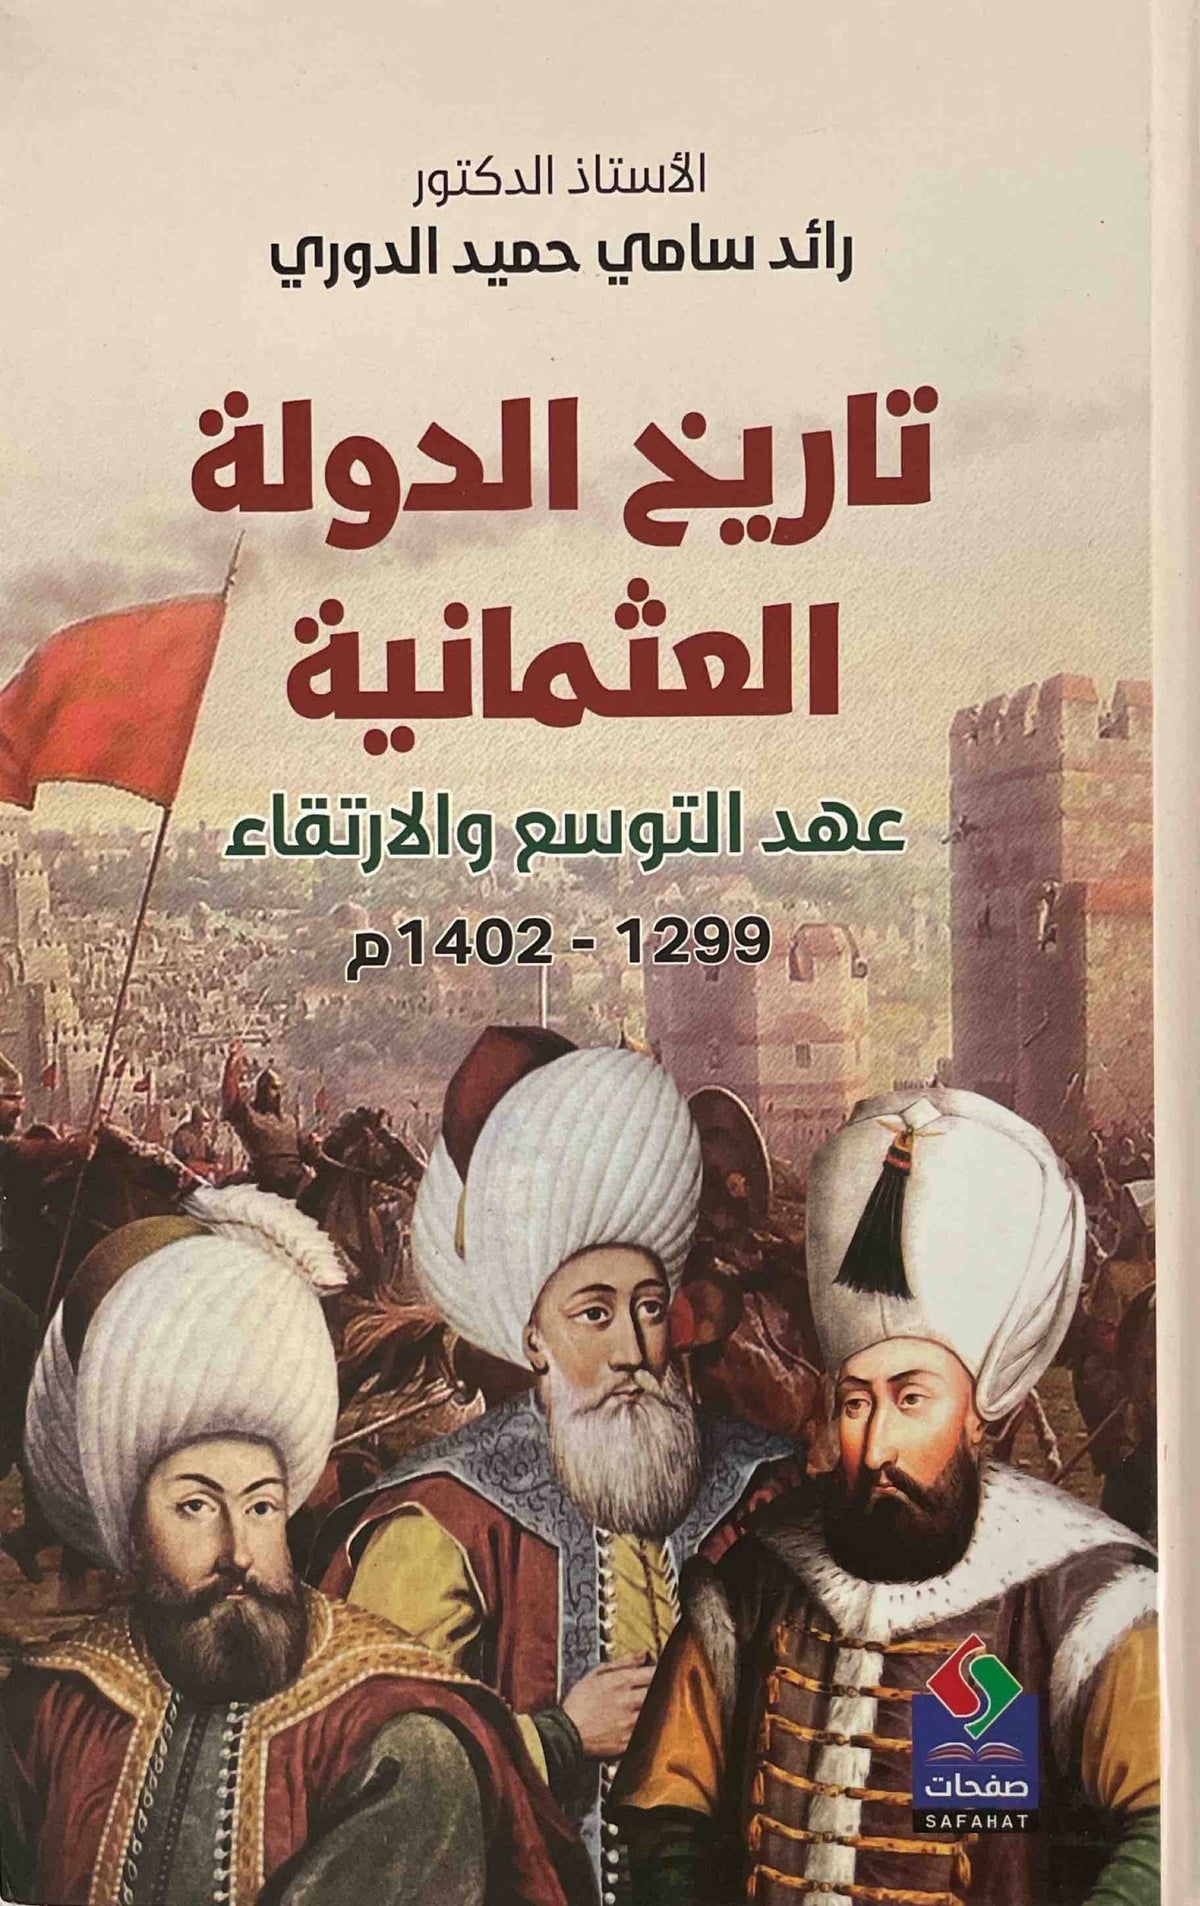 تاريخ الدولة العثمانية : عهد التوسع والارتقاء 1299-1402م